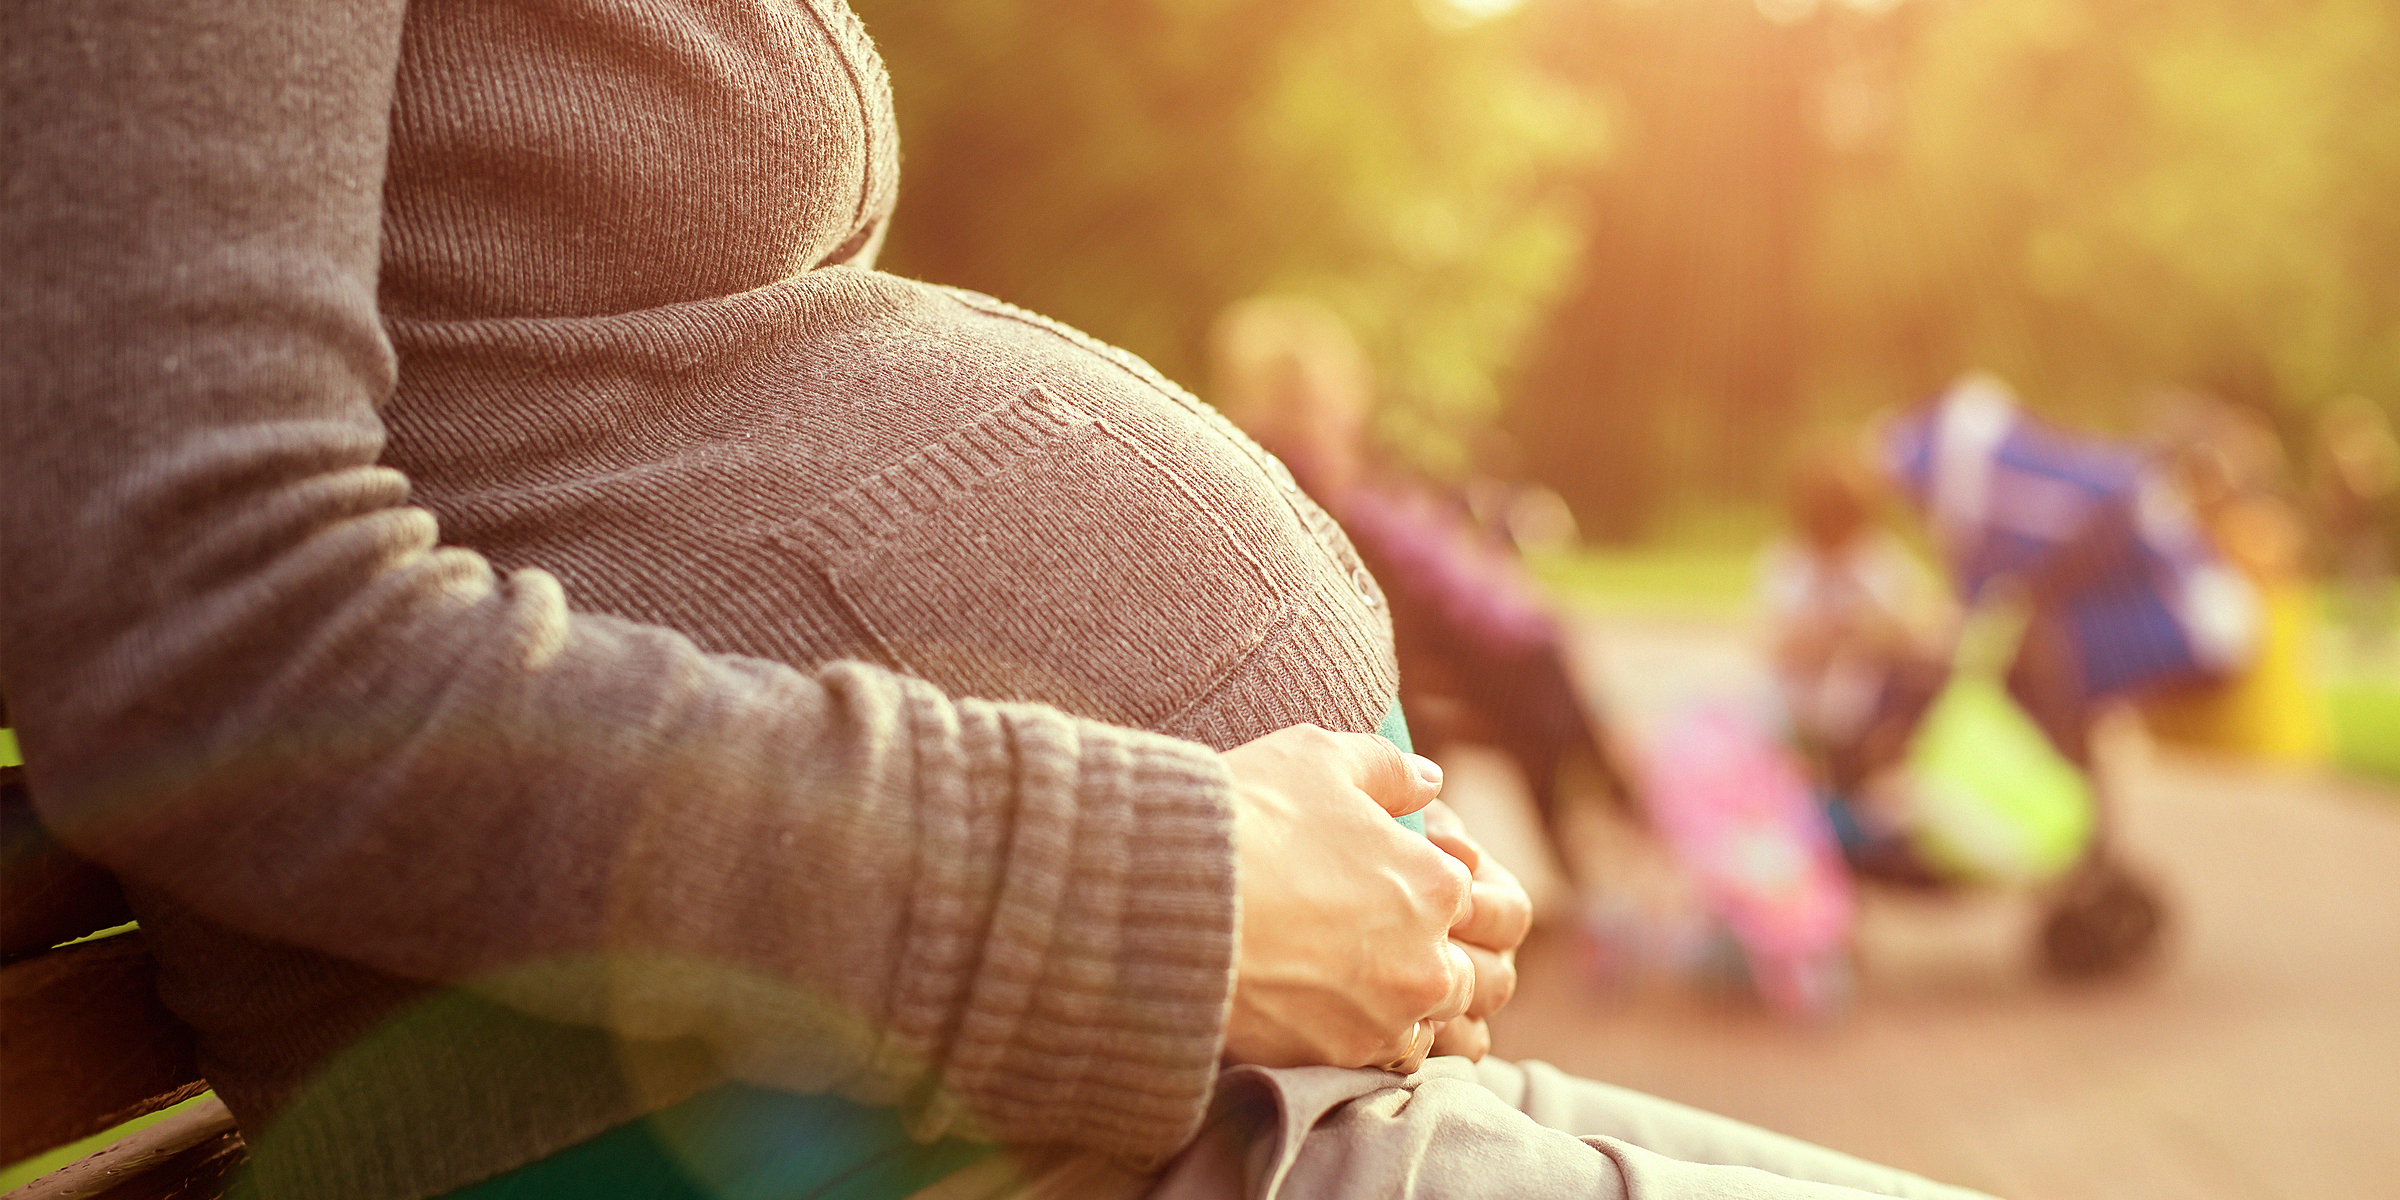 Une femme enceinte qui berce son baby bump en position assise | Source : Shutterstock